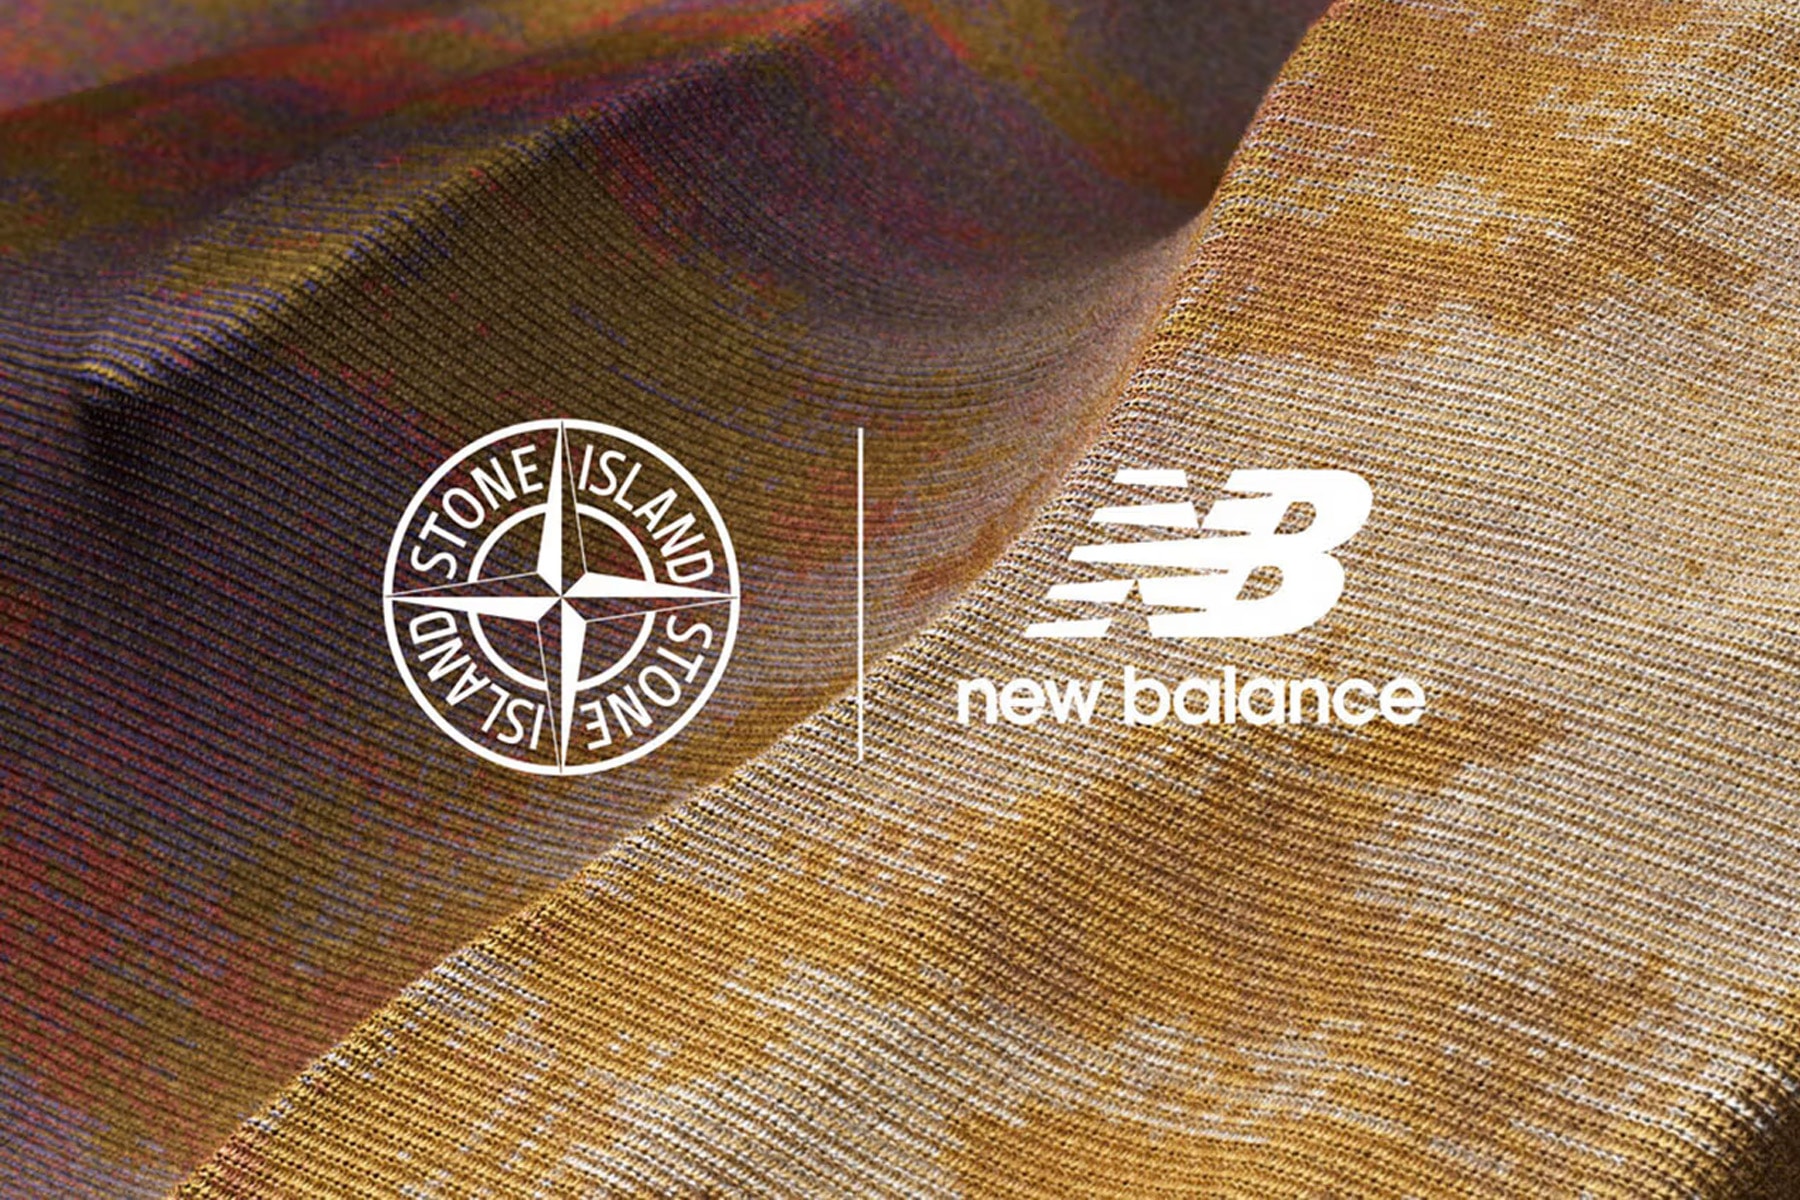 Stone Island x New Balance 最新聯名鞋款即將到來